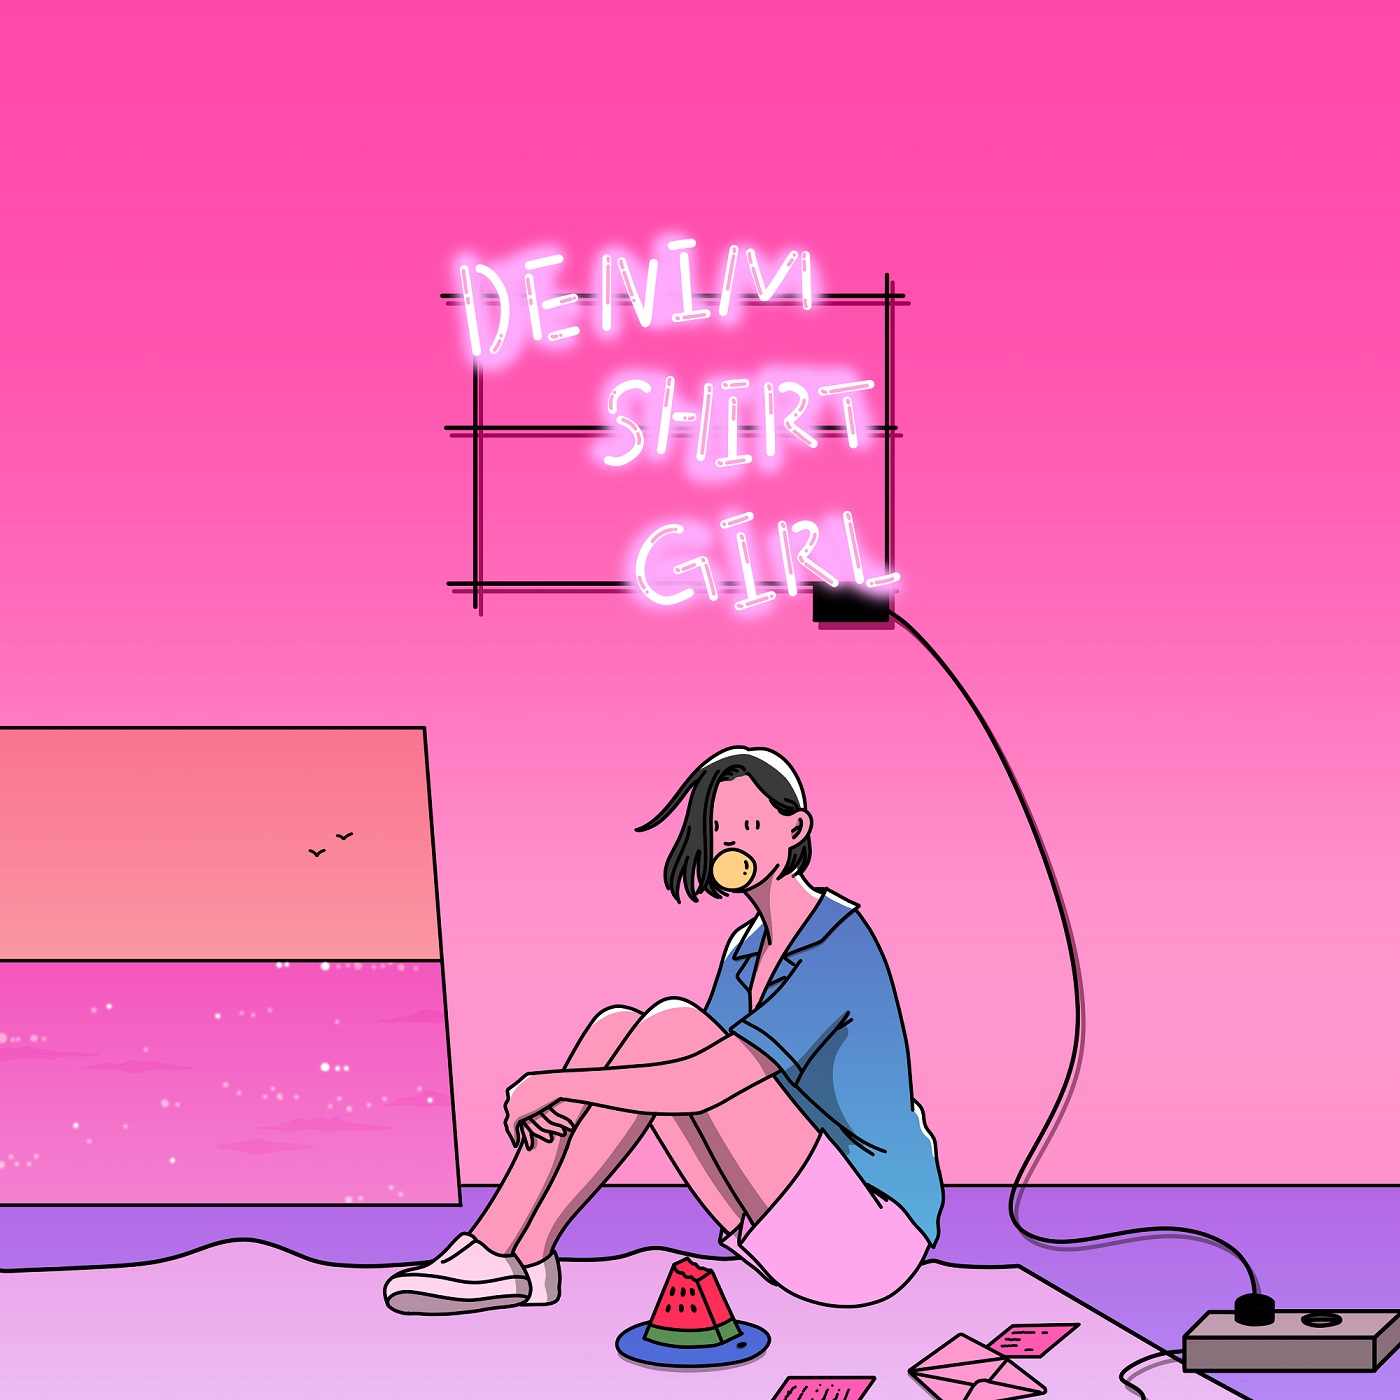 大橋ちっぽけ 9月発売のミニアルバム Denim Shirt Girl 詳細を発表 ジャケは韓国のイラストレーターshim Moraeとコラボ Musicman